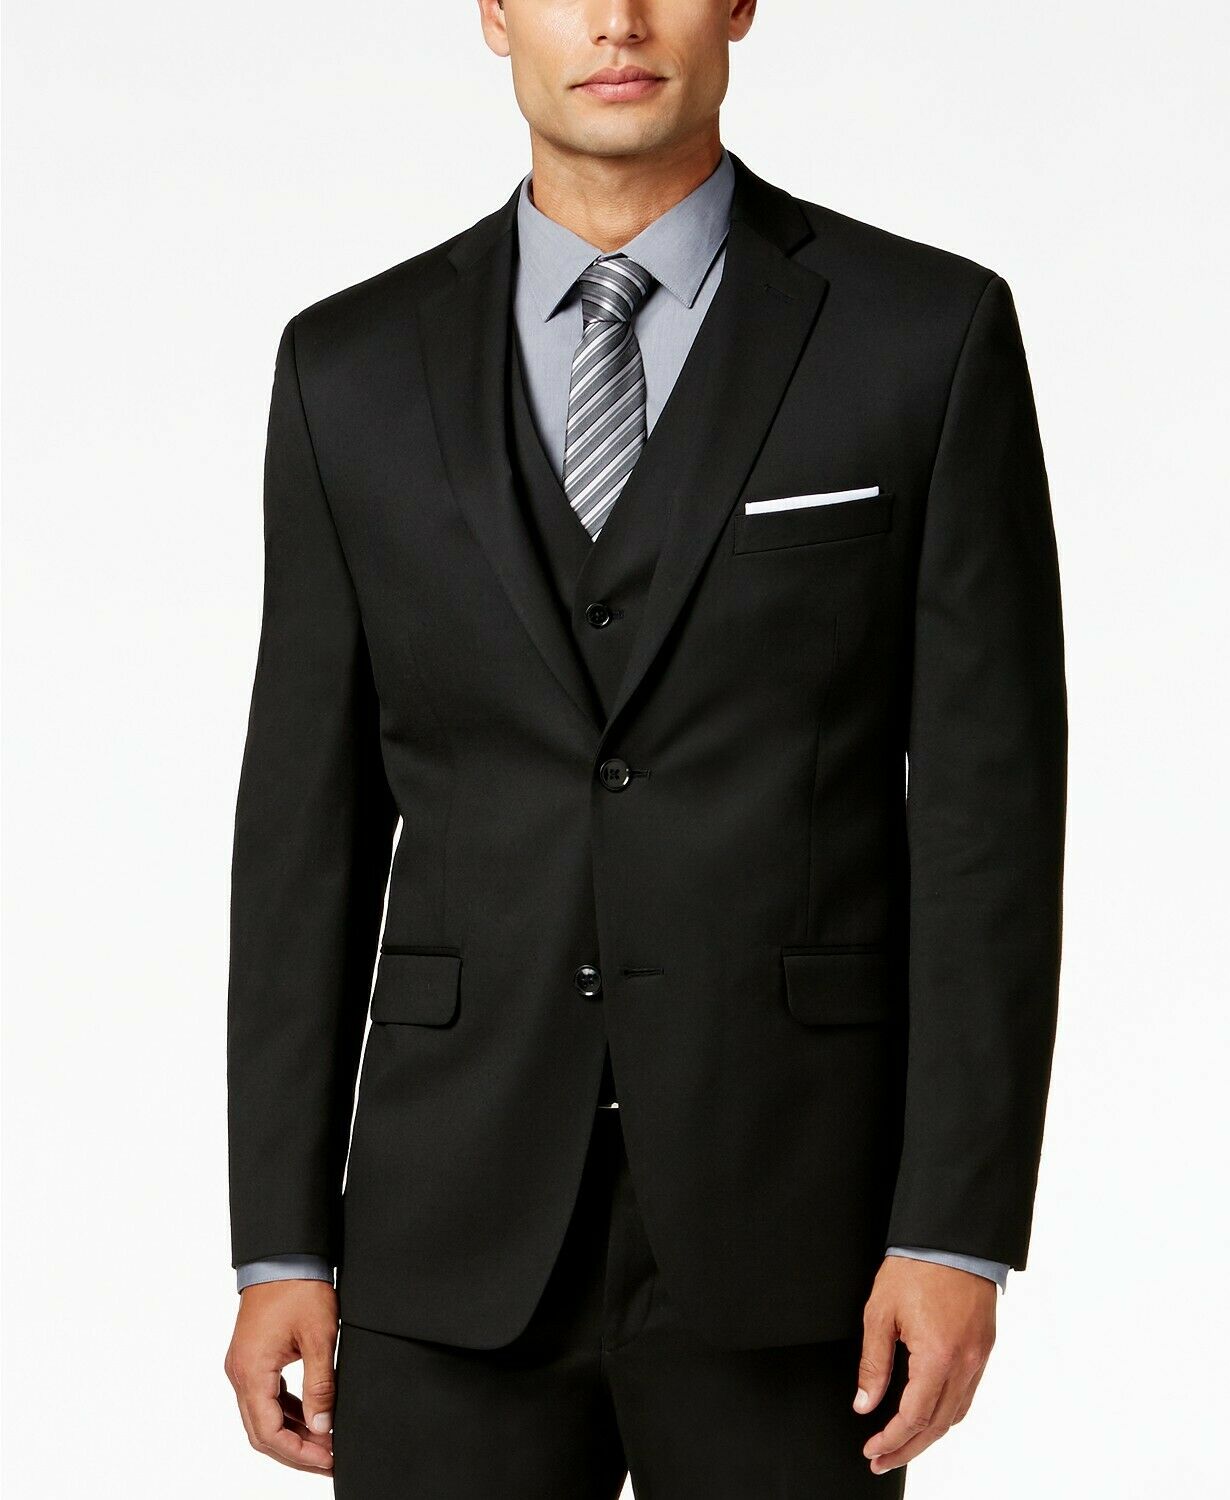 Alfani Men's 2 PC Suit 38S / 30 x 30 Black Stretch Performance Slim-Fit